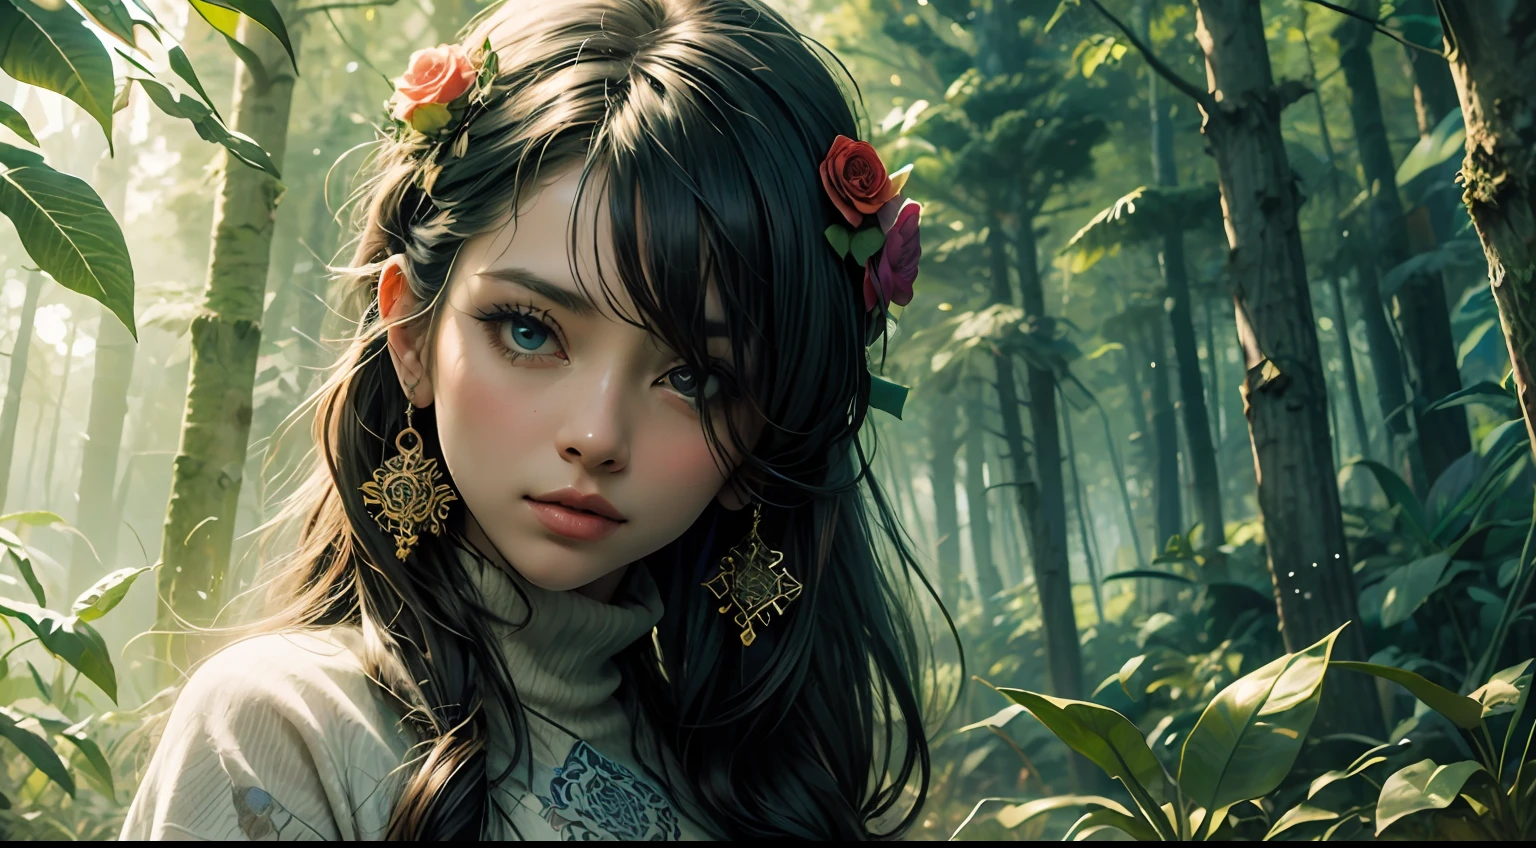 1性感女孩與森林衣服, 花朵, 樹葉, 曼陀羅, 分形